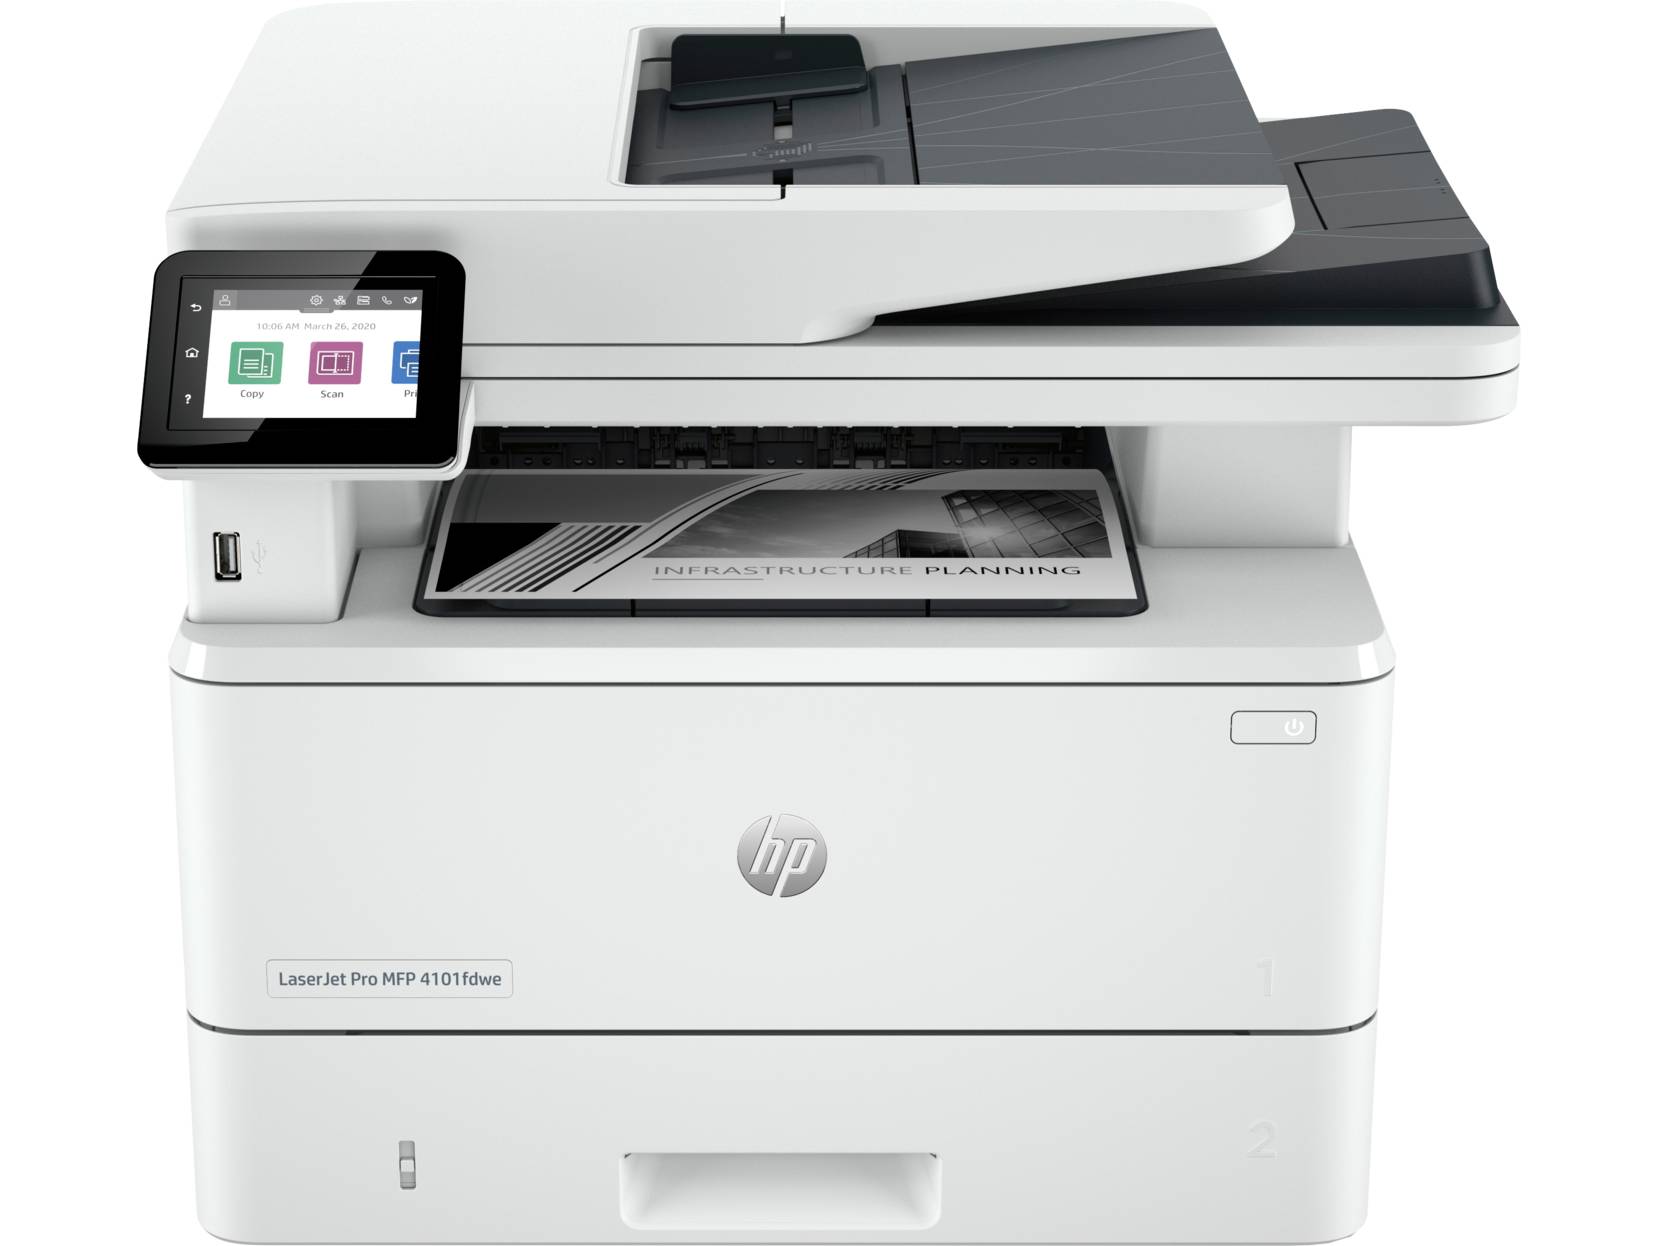 HP LaserJet Pro MFP 4101fdwe Toner Cartridges' Printer